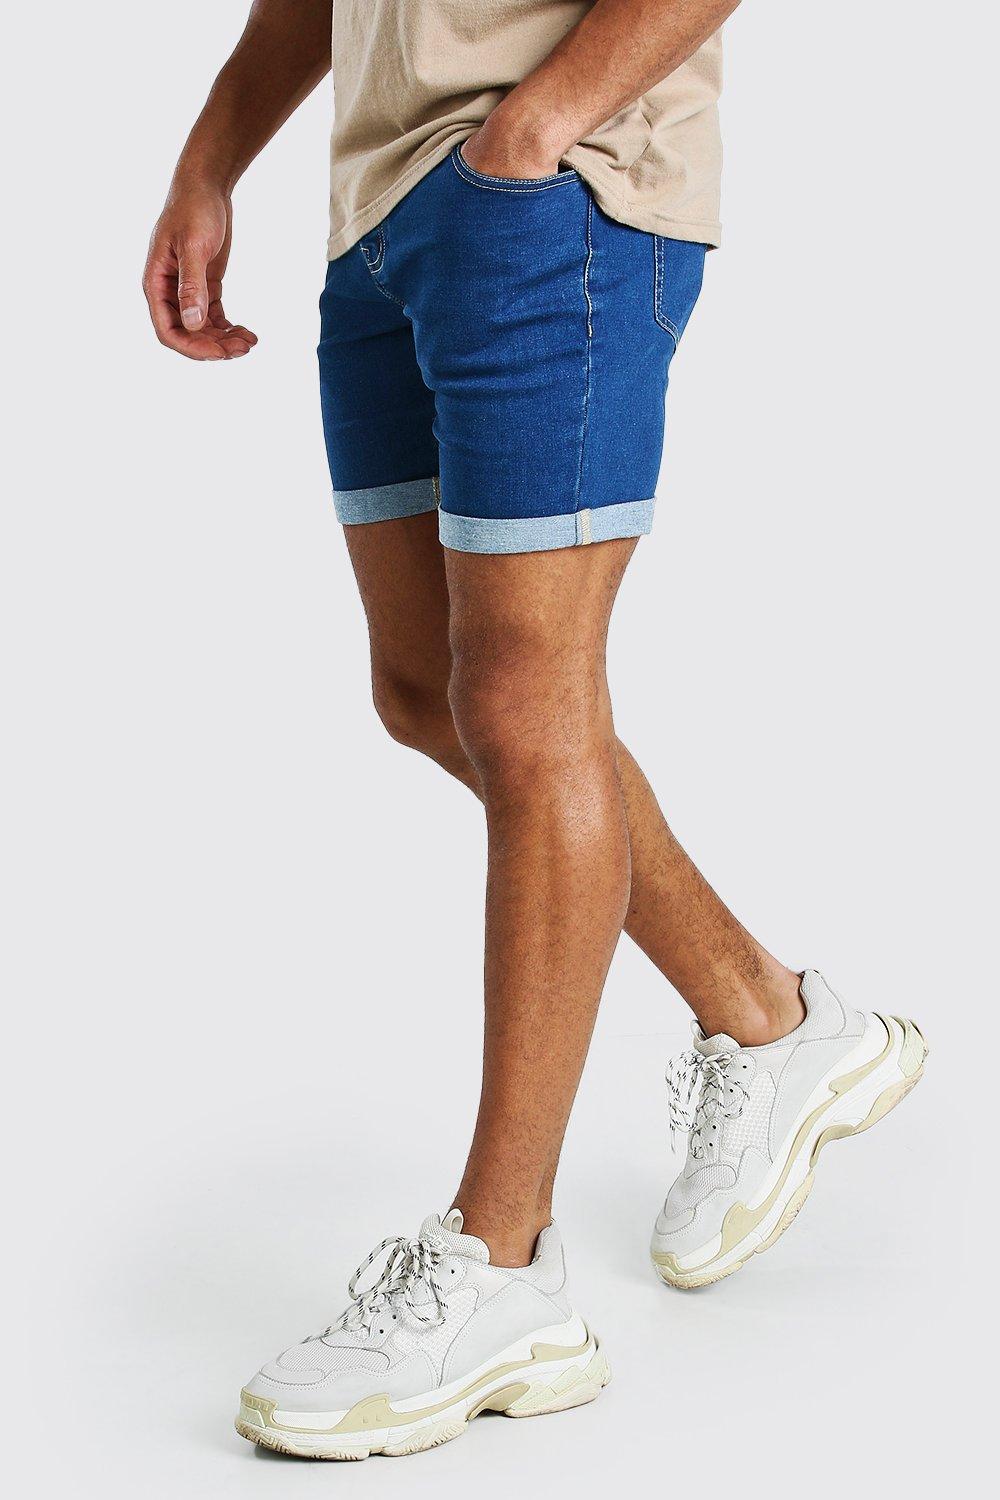 mens jeans shorts sale